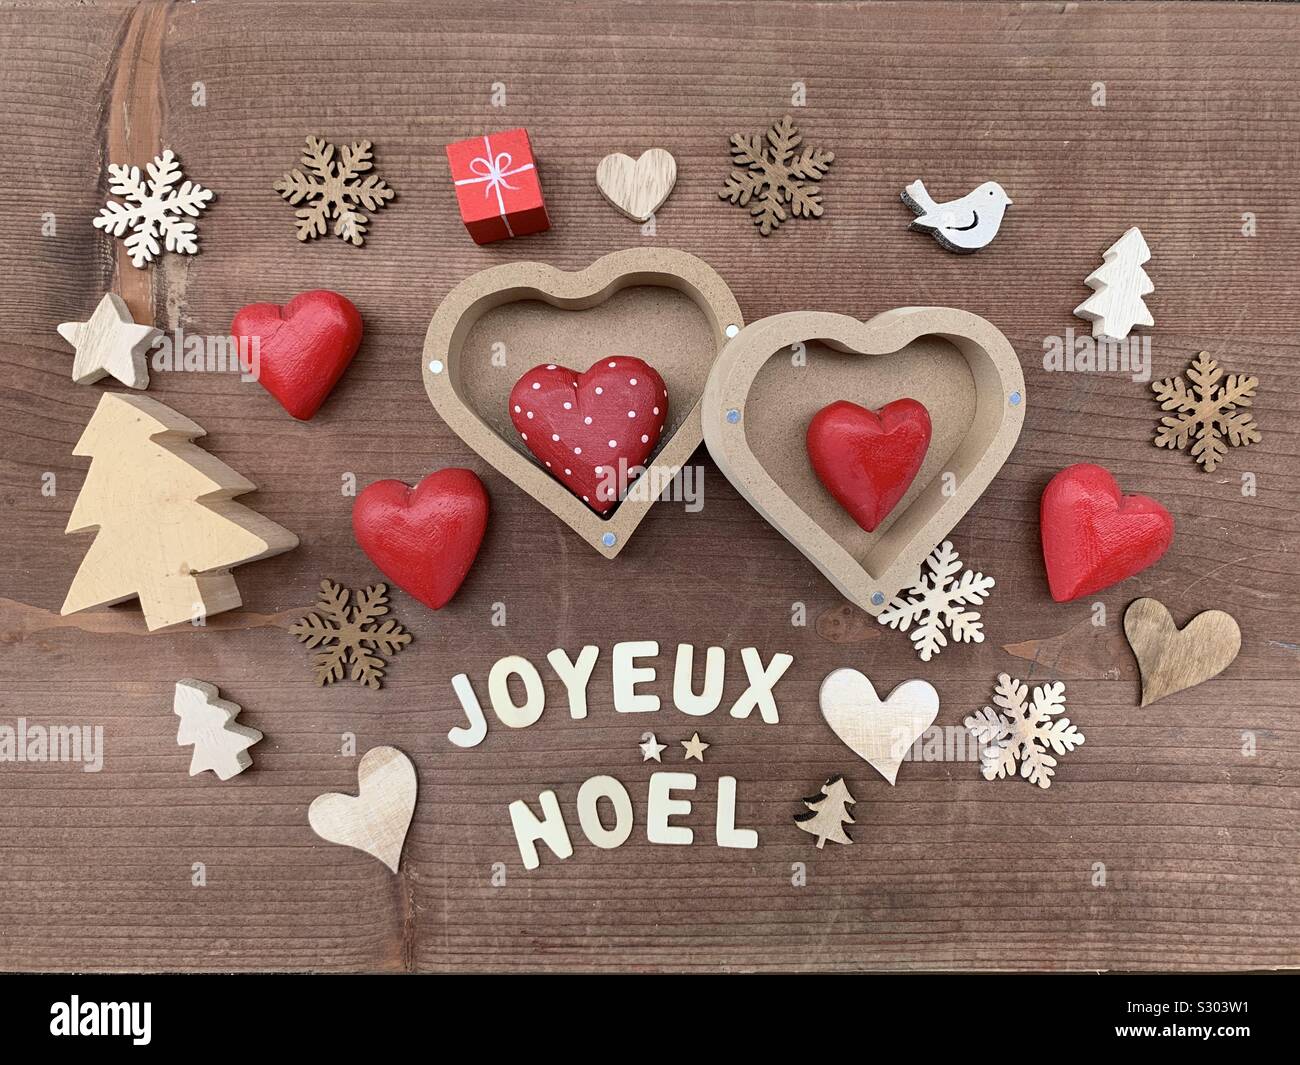 Joyeux Noël, francese Buon Natale messaggio con decorazioni in legno Foto Stock